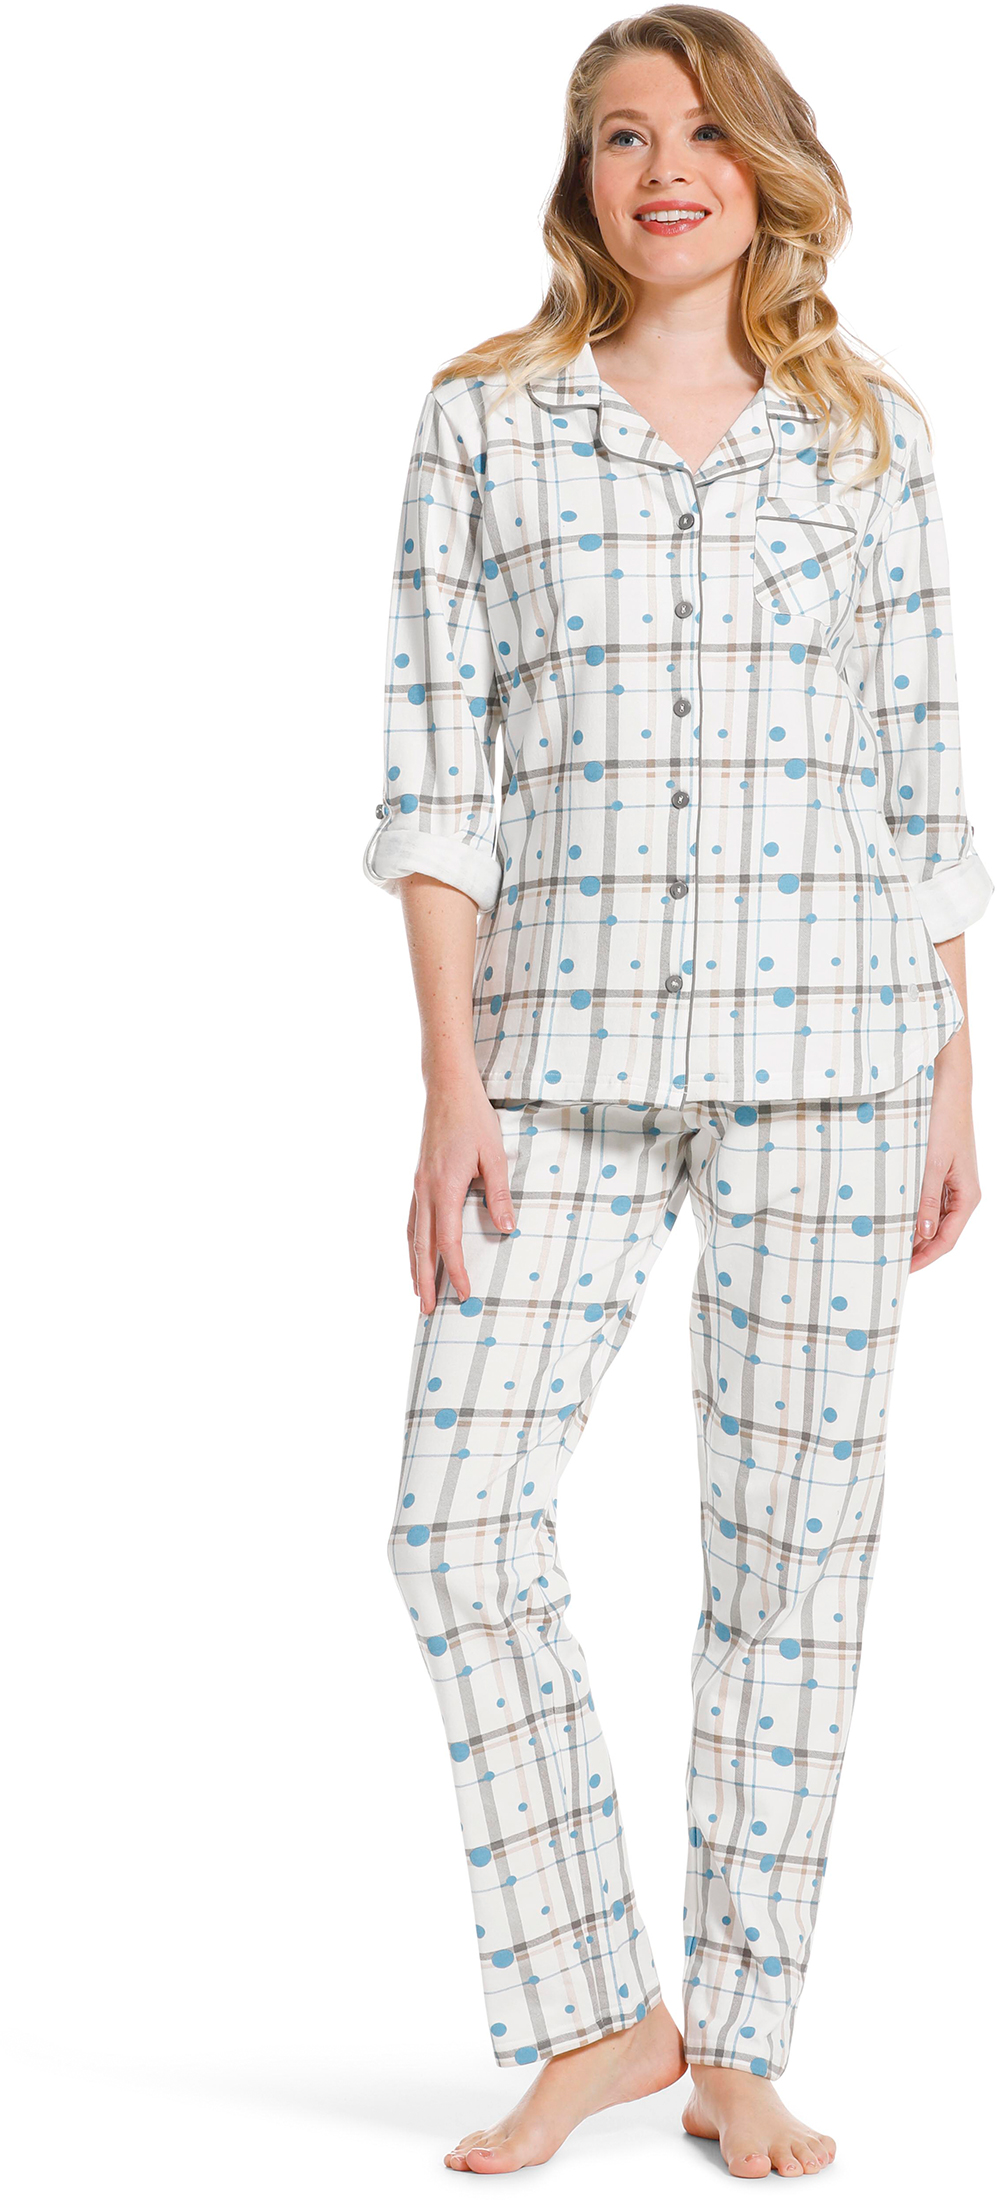 Pastunette dames doorknoop pyjama 20222 142 6 36